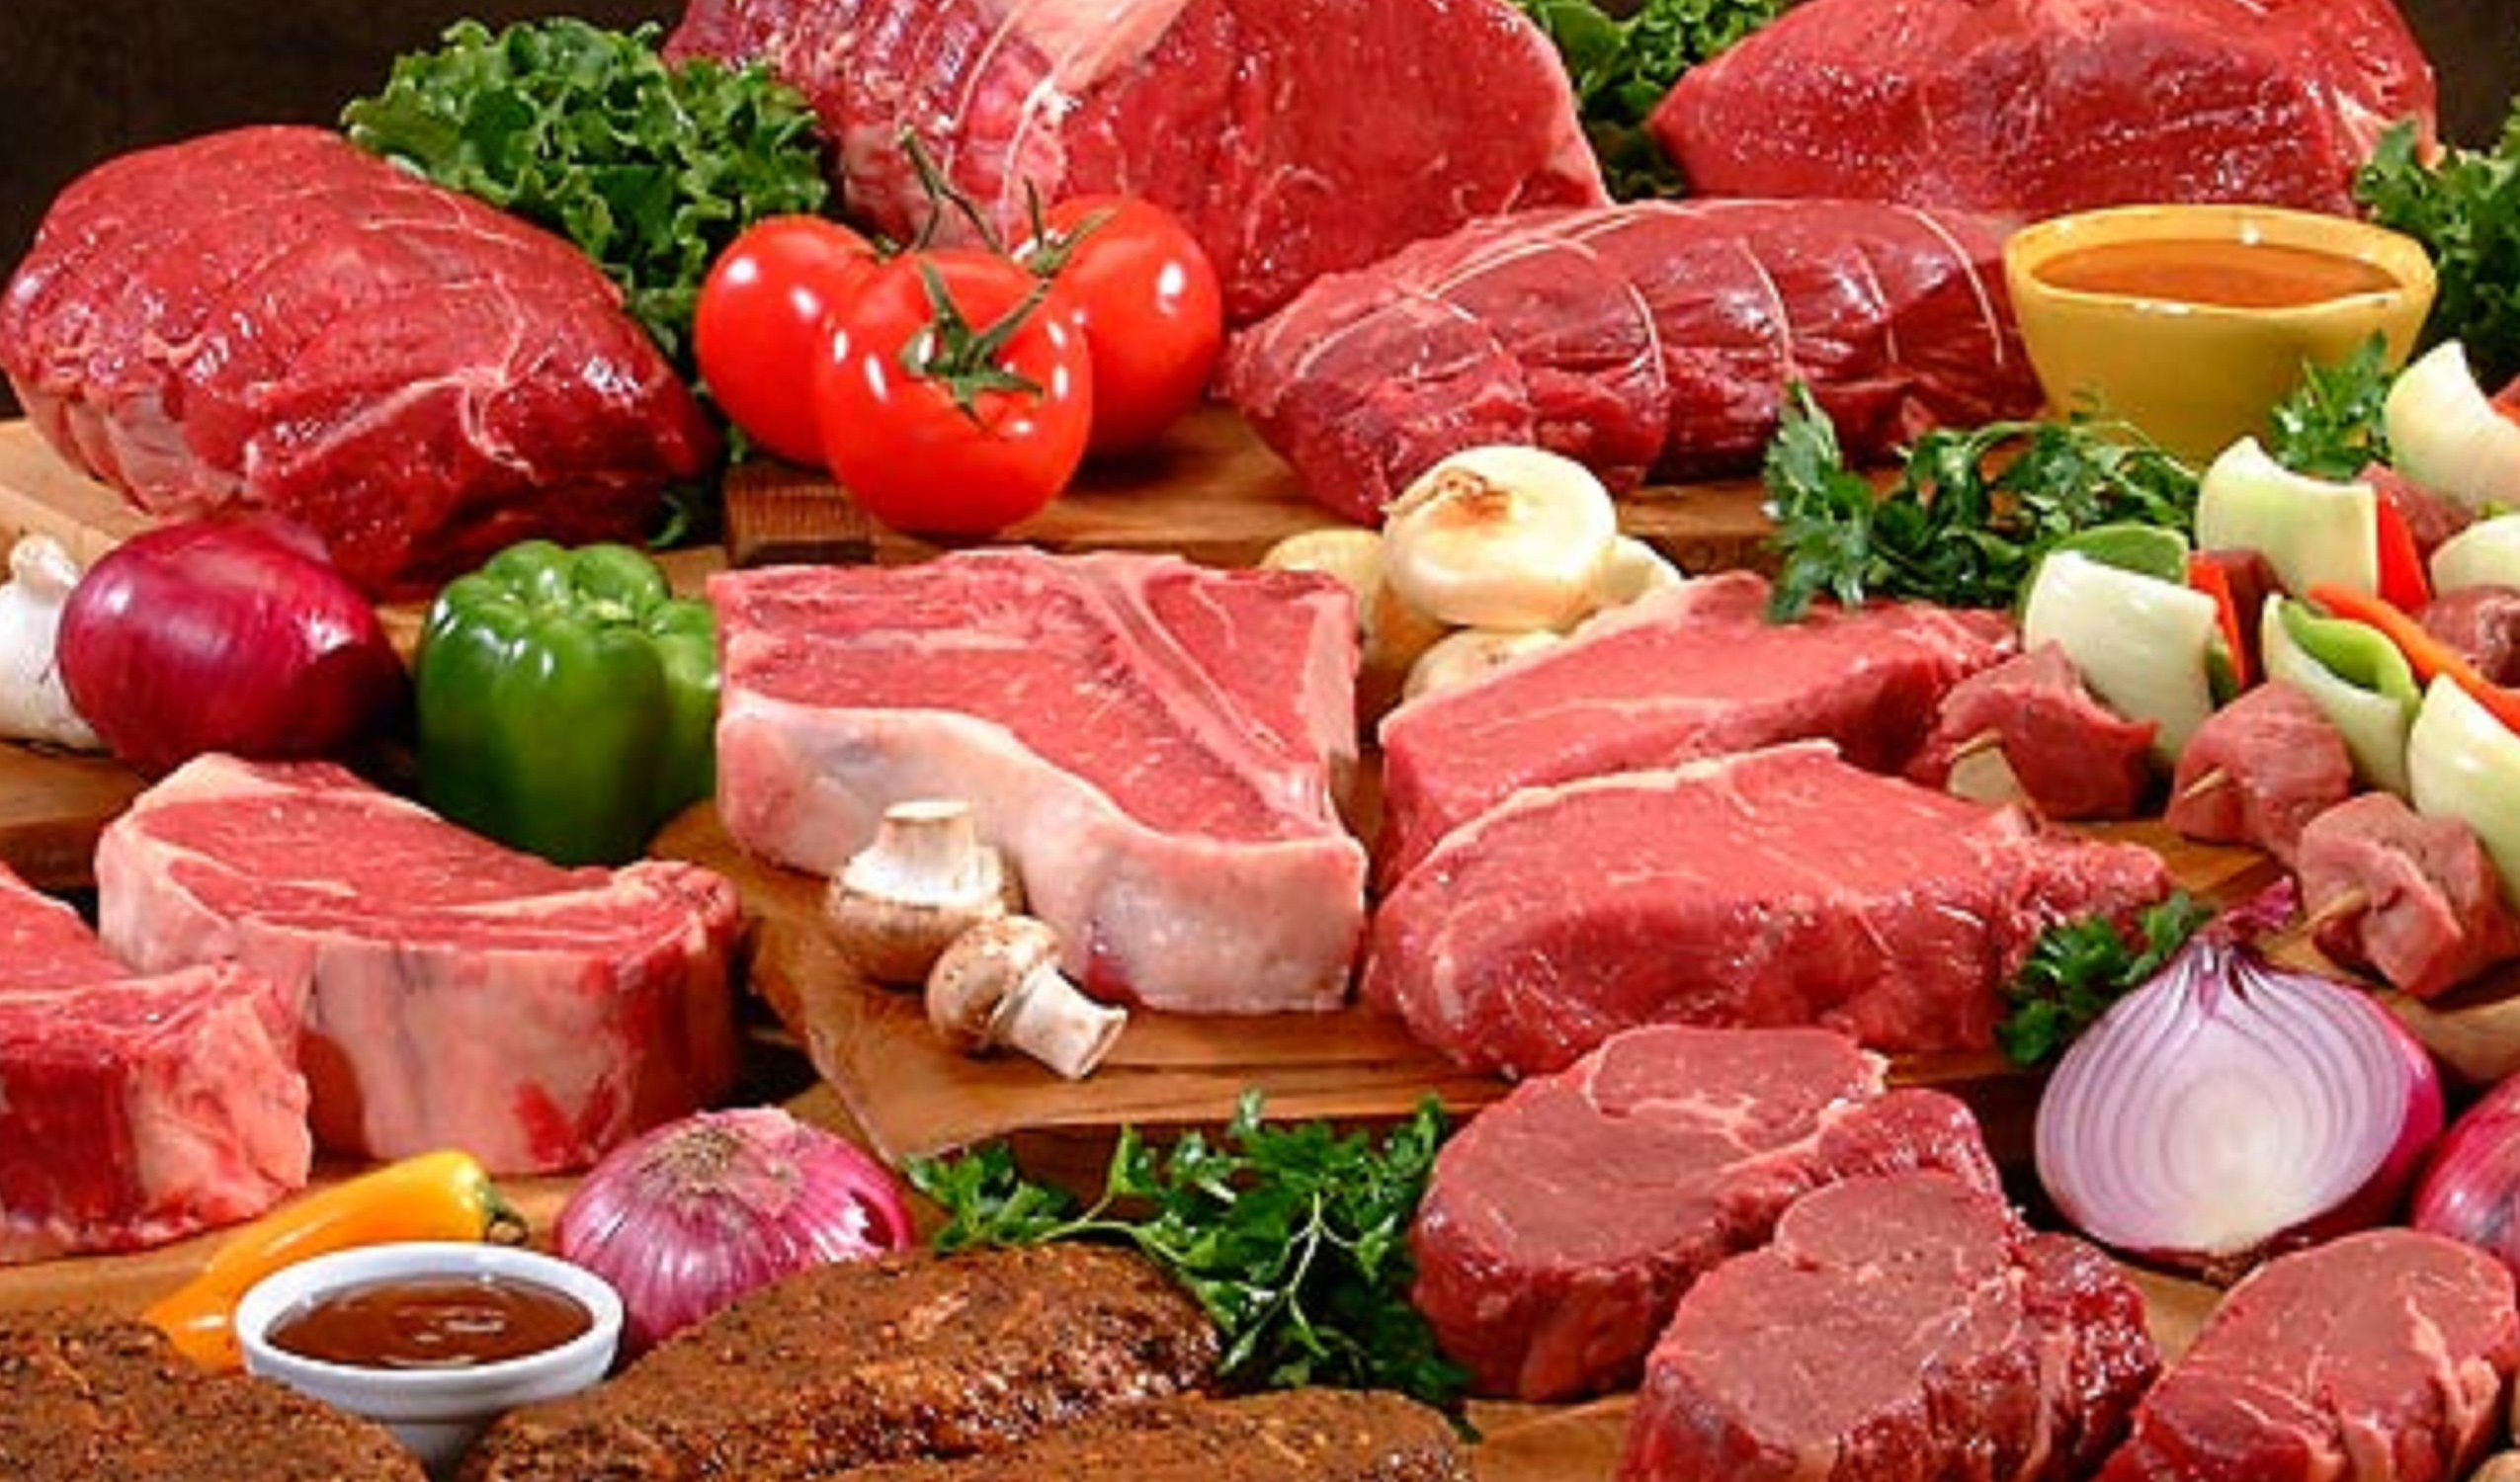 کاهش ۵۰ درصدی مصرف گوشت قرمز/ ۴ میلیون راس بره نر در دست دامداران مانده است